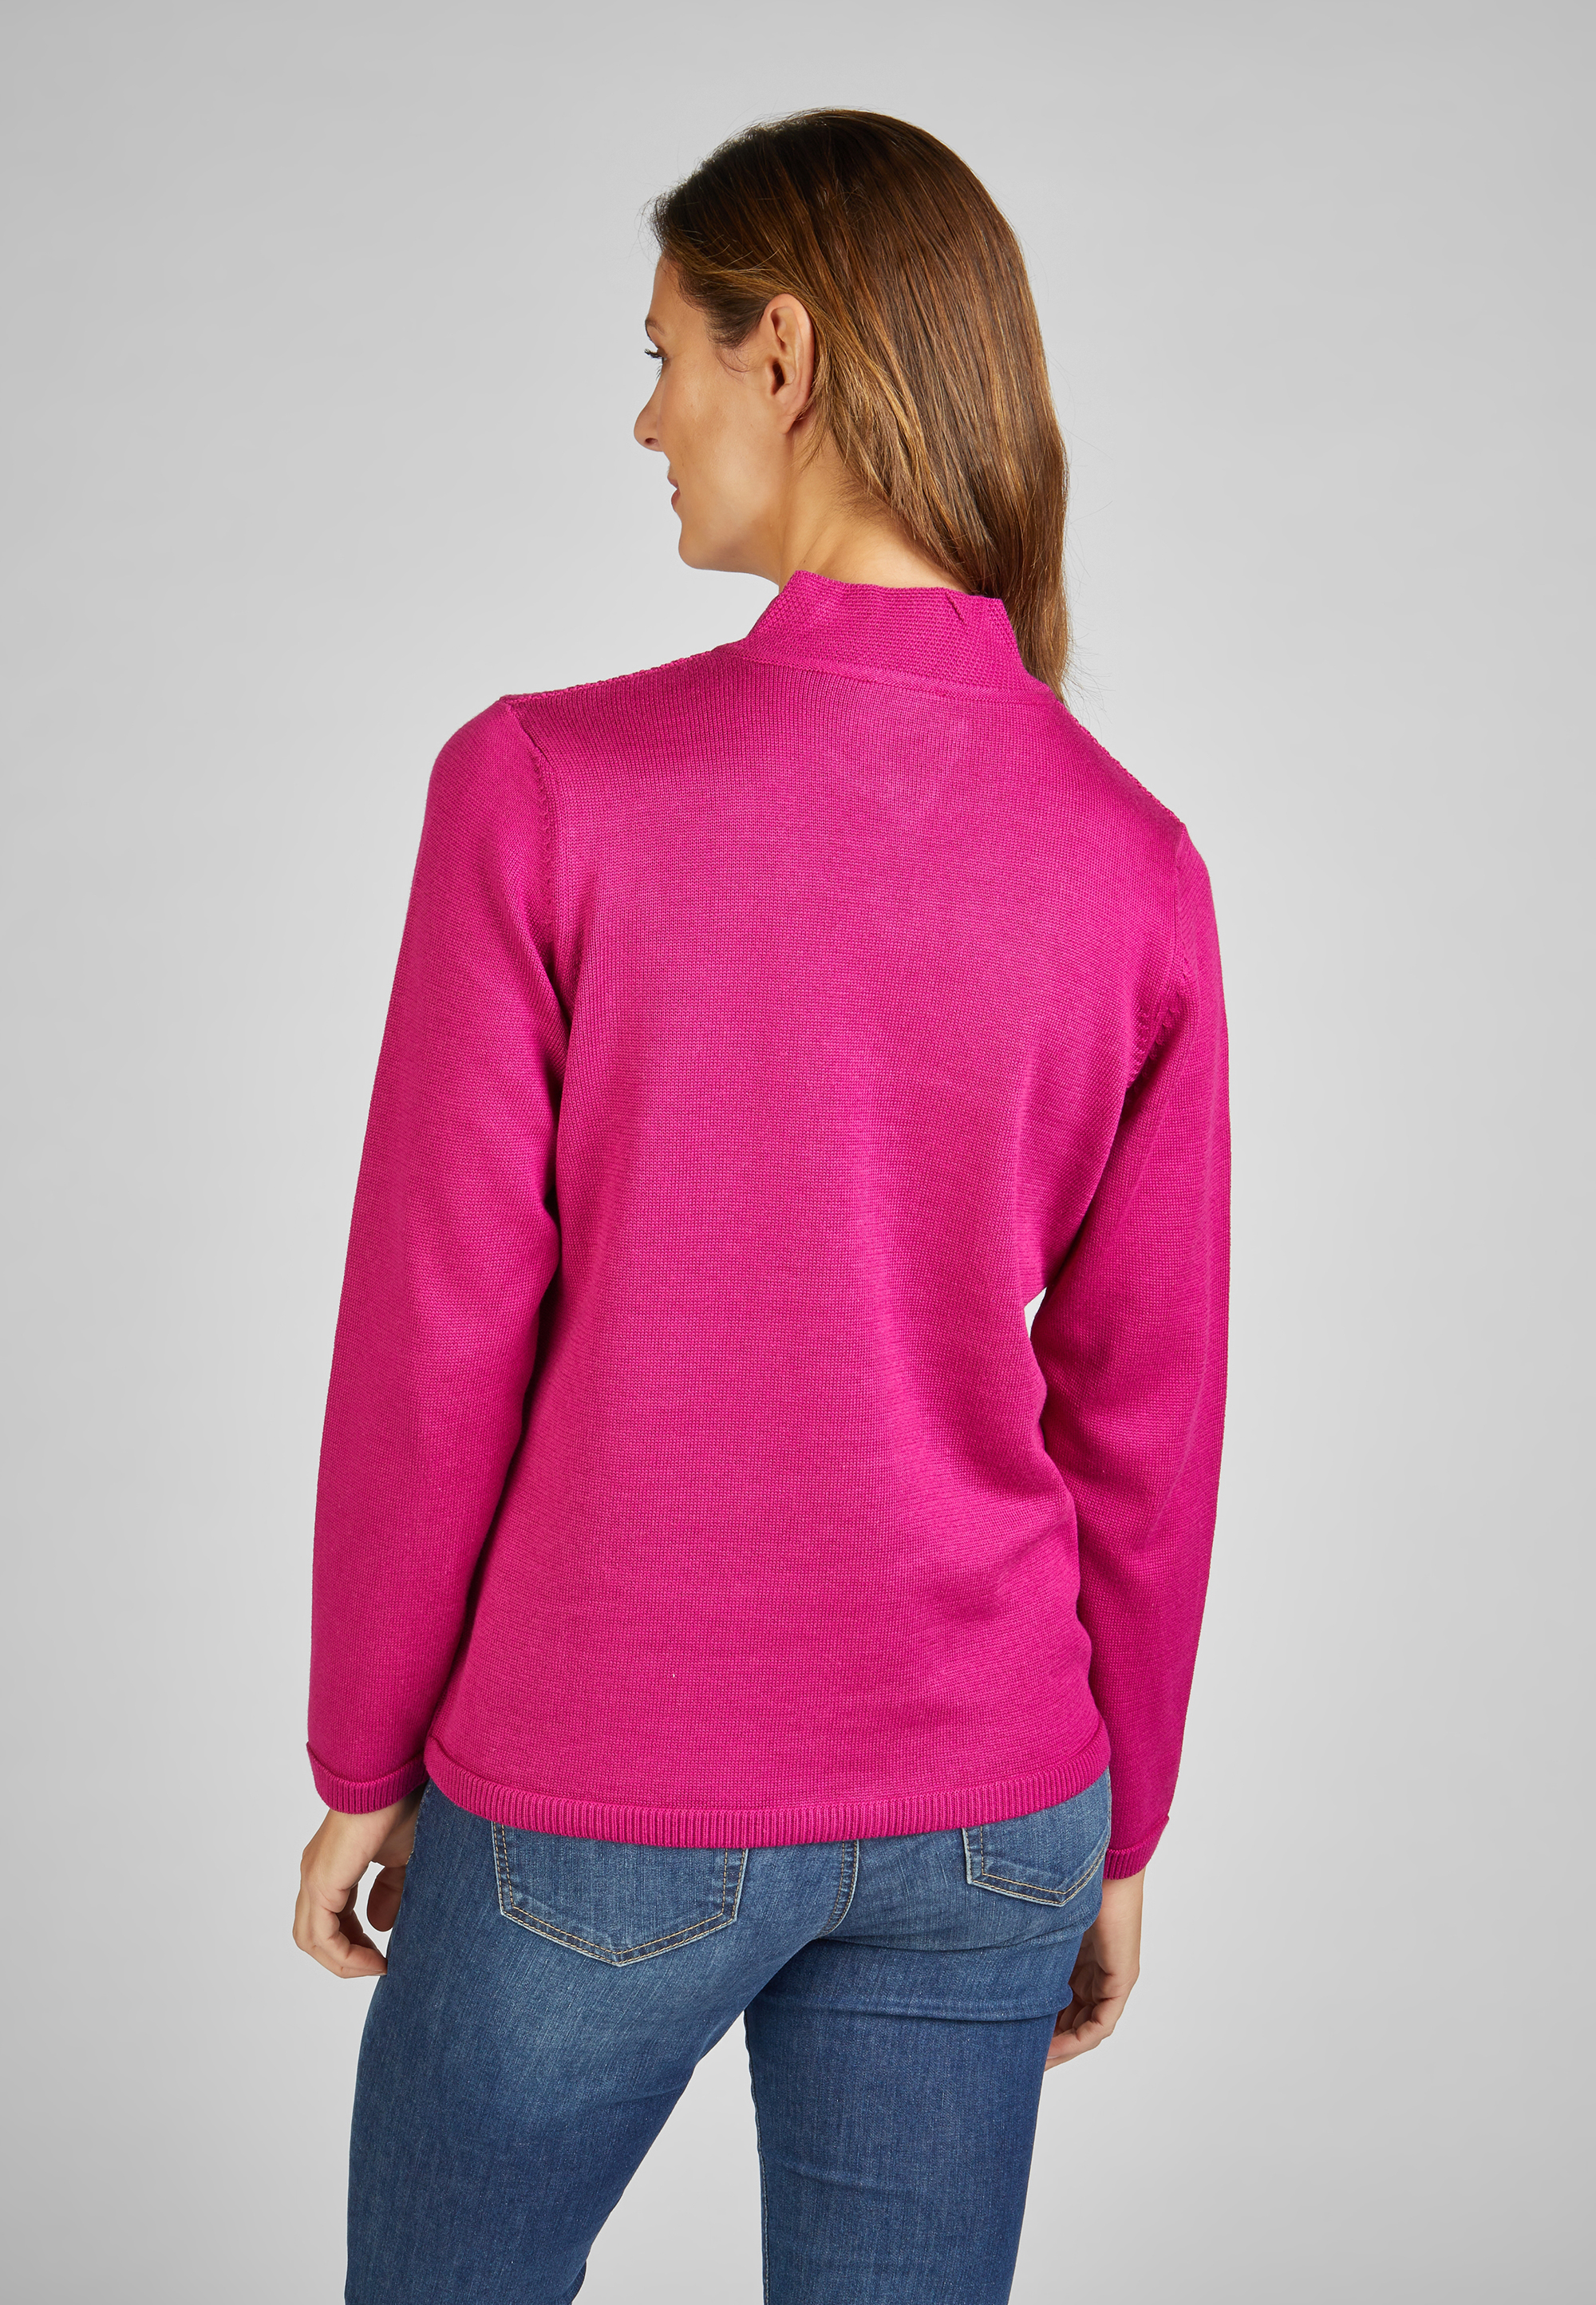 Strickjacke mit Reißverschluss Größe: 36, Pink » Farbe